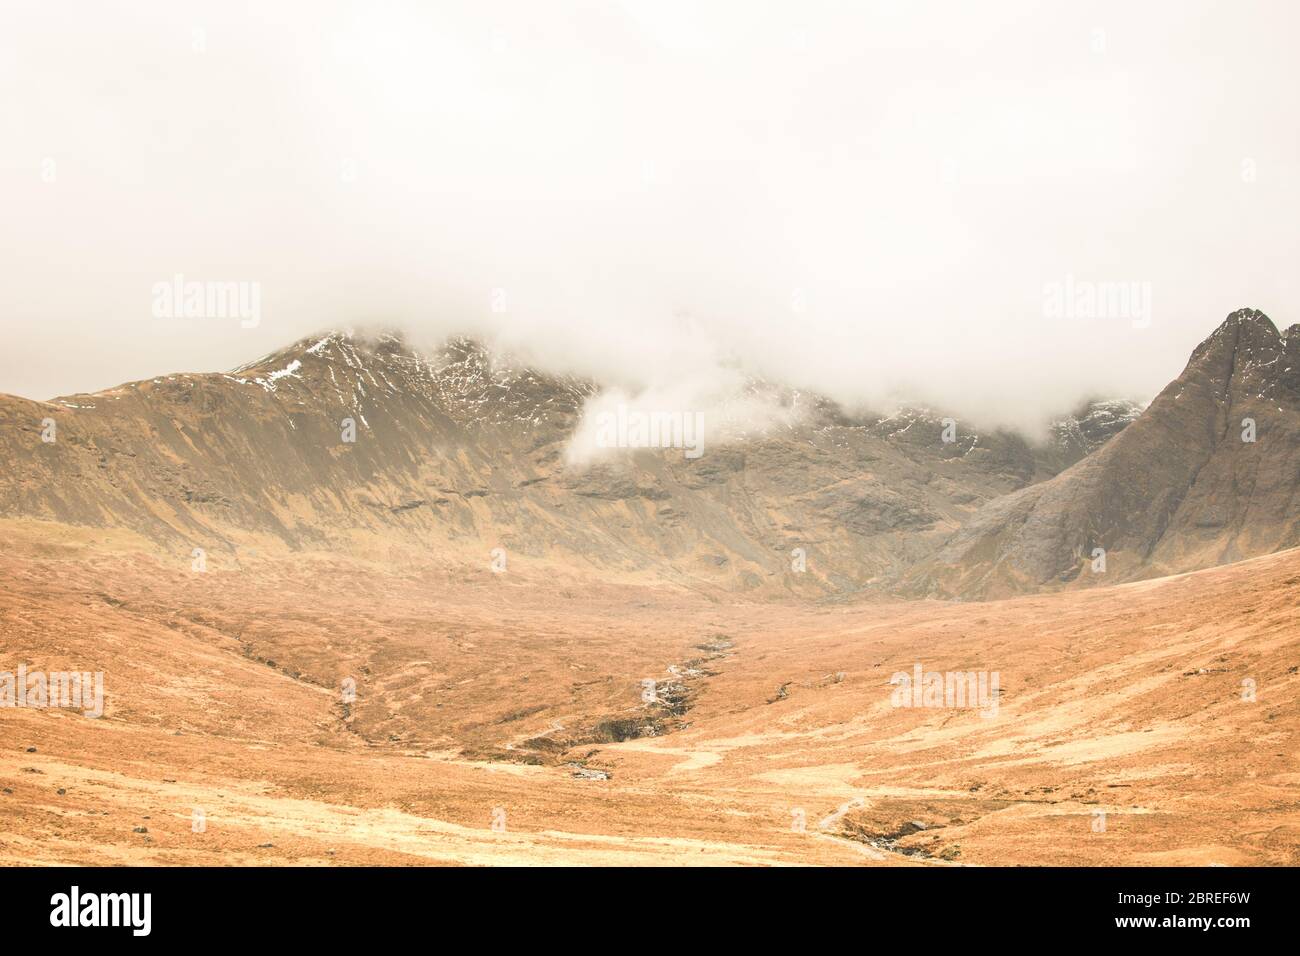 Une montagne de l'île de Skye en Écosse couverte de nuages dans une atmosphère d'automne Banque D'Images